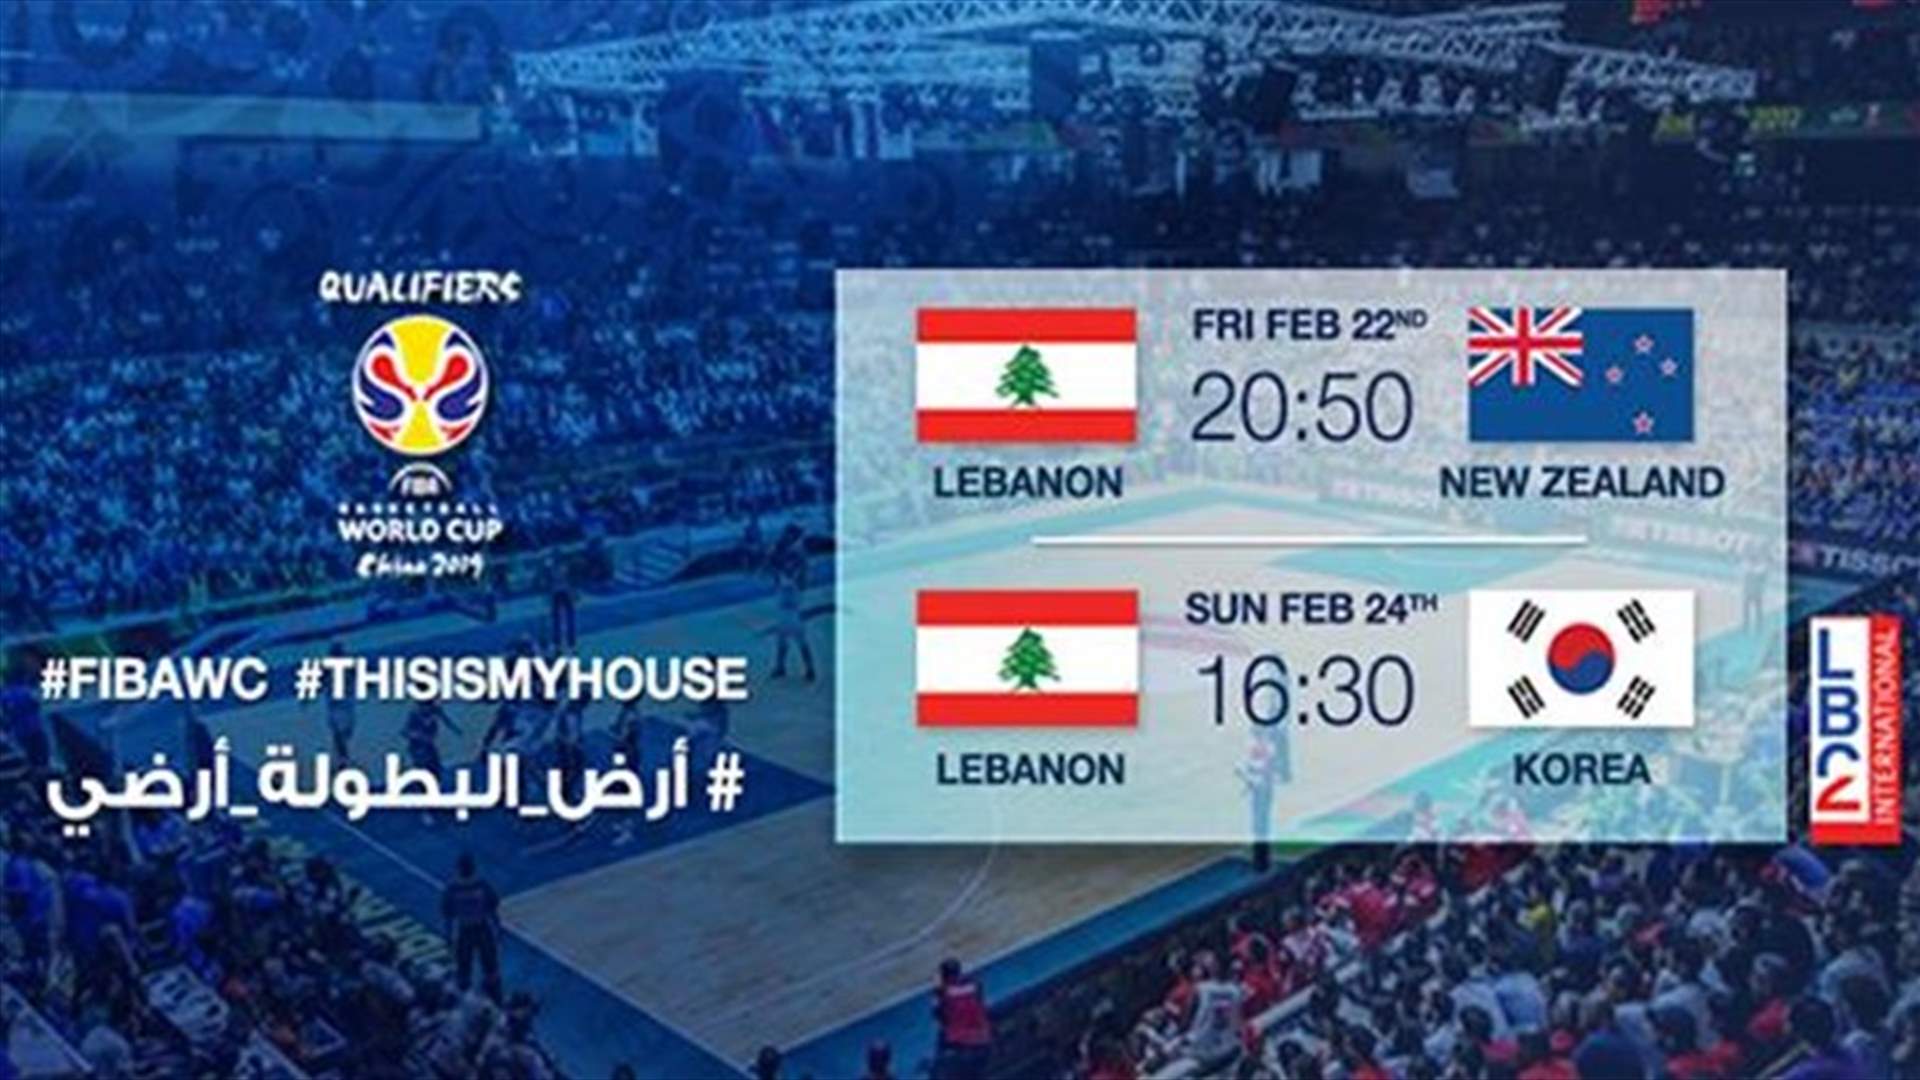 كيف يُمكنكم مشاهدة مبارتيّ منتخب لبنان يوميّ الجمعة والأحد من داخل لبنان وخارجه؟